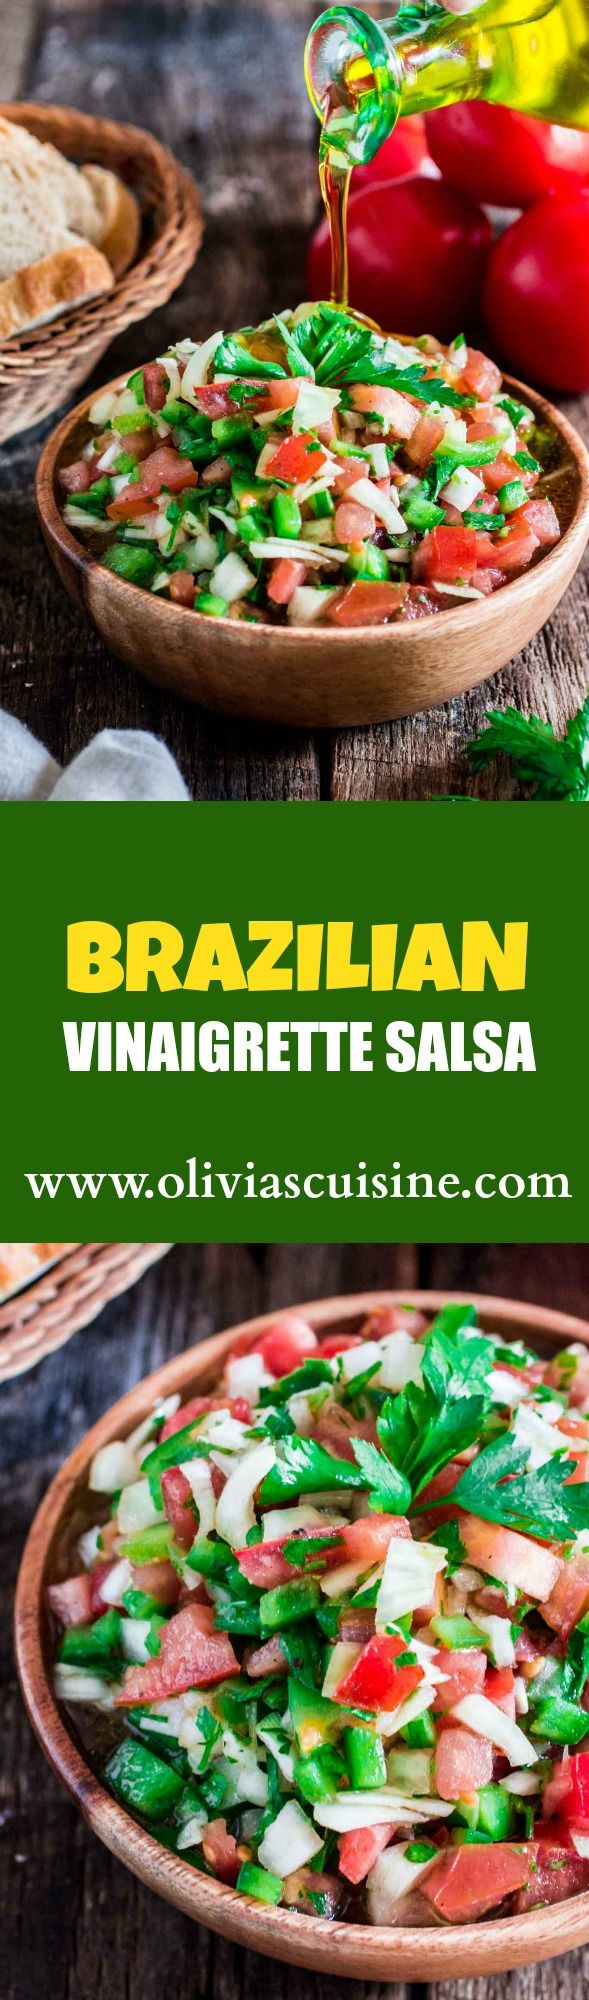 Brazilian Vinaigrette Salsa